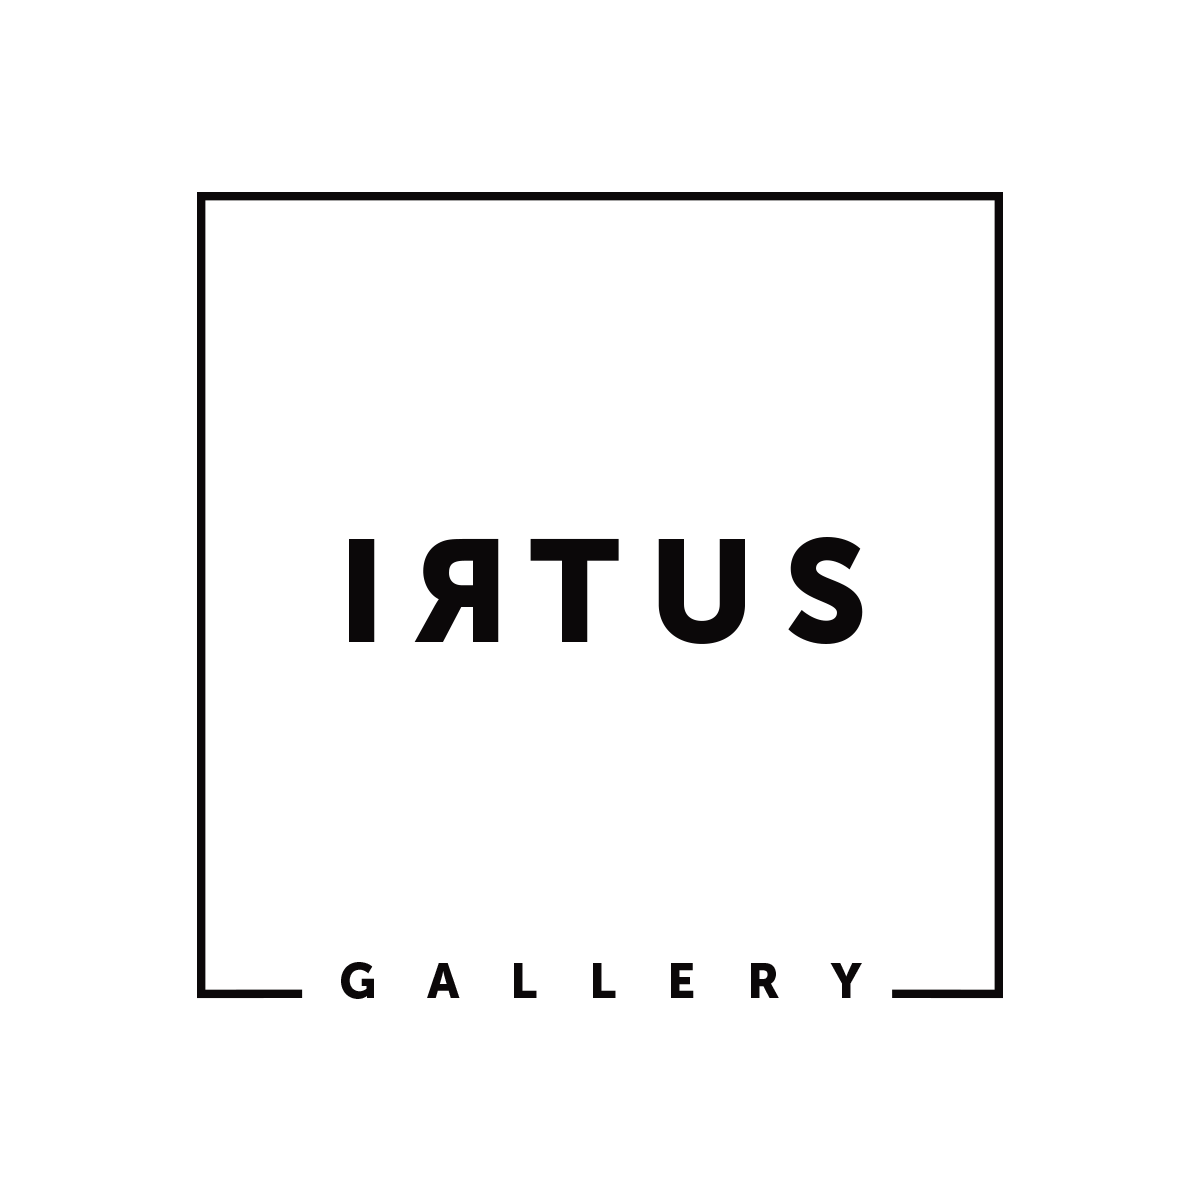 Irtus Gallery